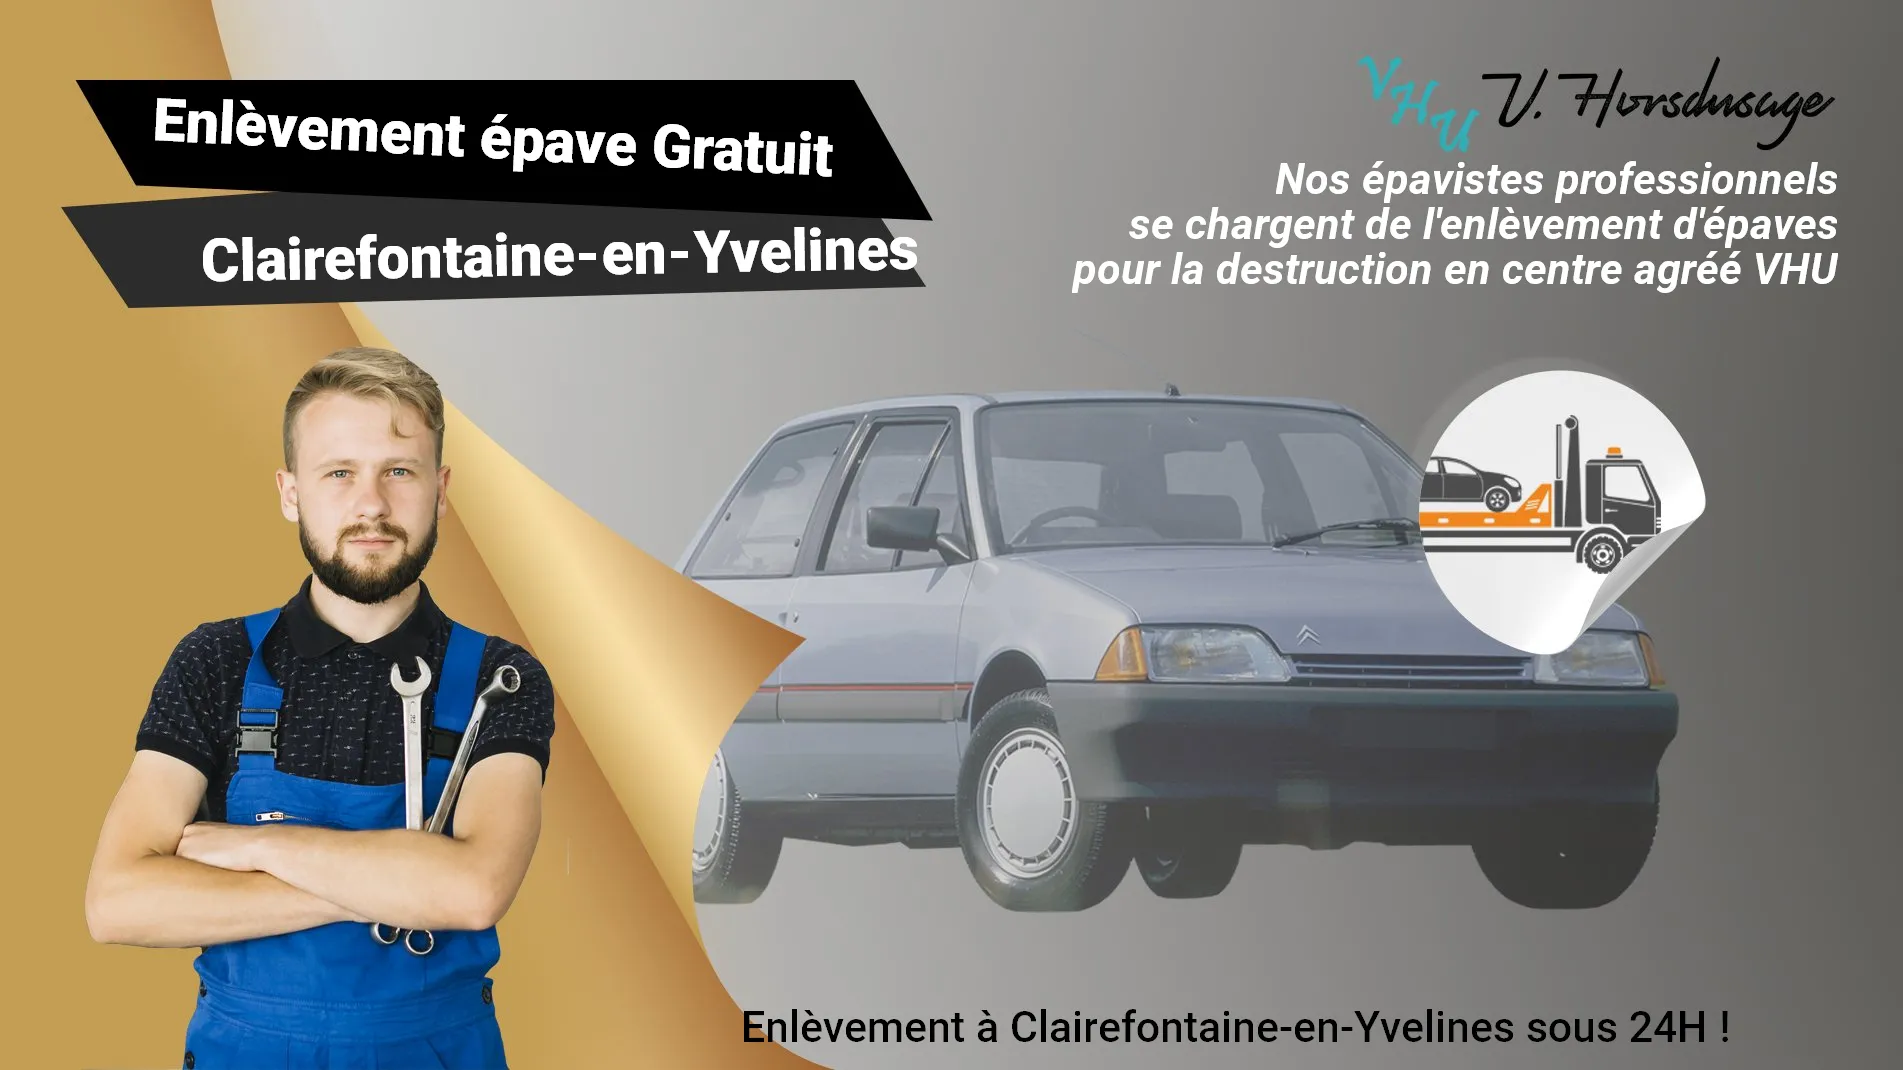 Pour un enlèvement gratuit à Clairefontaine-en-Yvelines, contactez nos épavistes agréé VHU